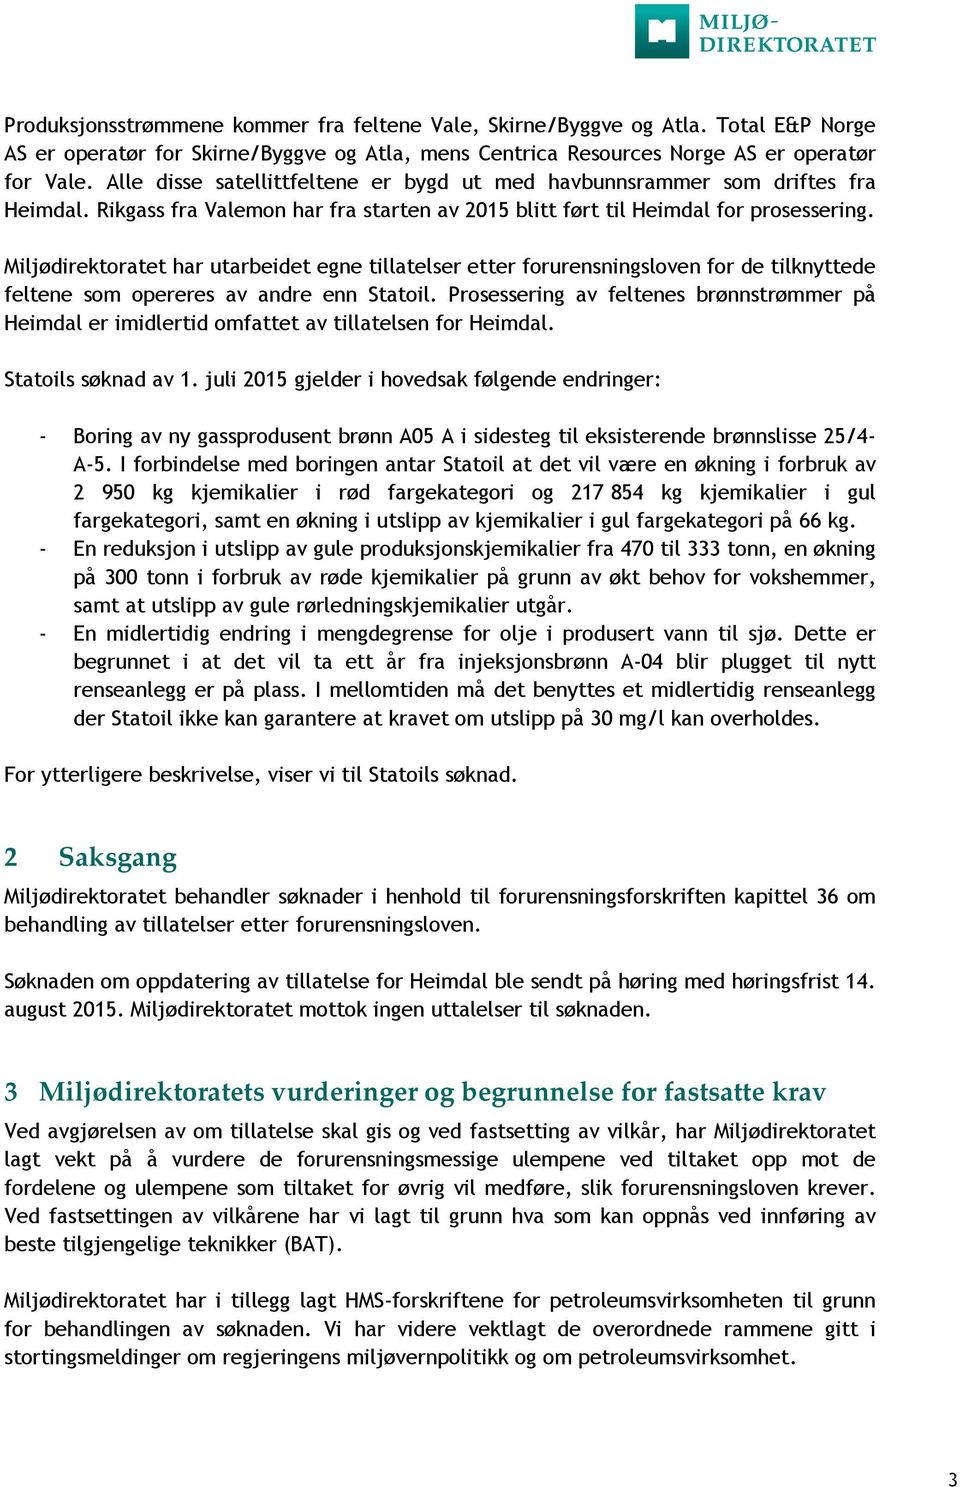 Miljødirektoratet har utarbeidet egne tillatelser etter forurensningsloven for de tilknyttede feltene som opereres av andre enn Statoil.